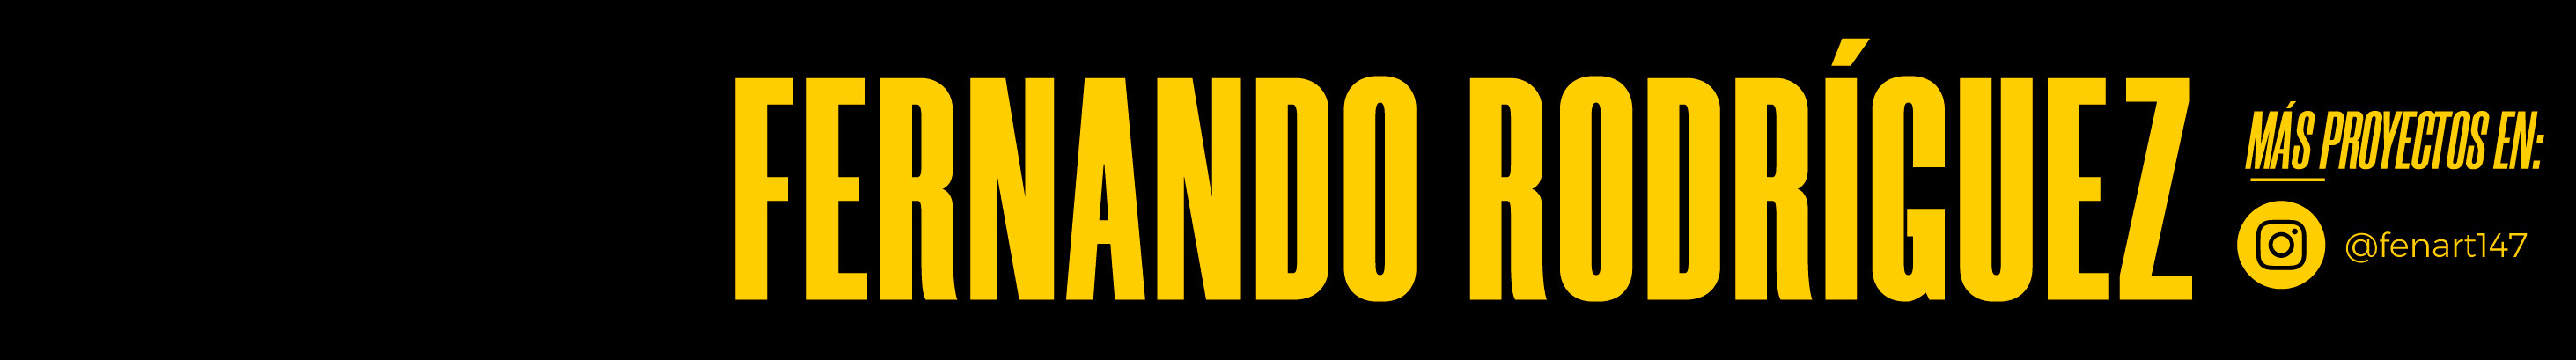 Fernando Moreno's profile banner